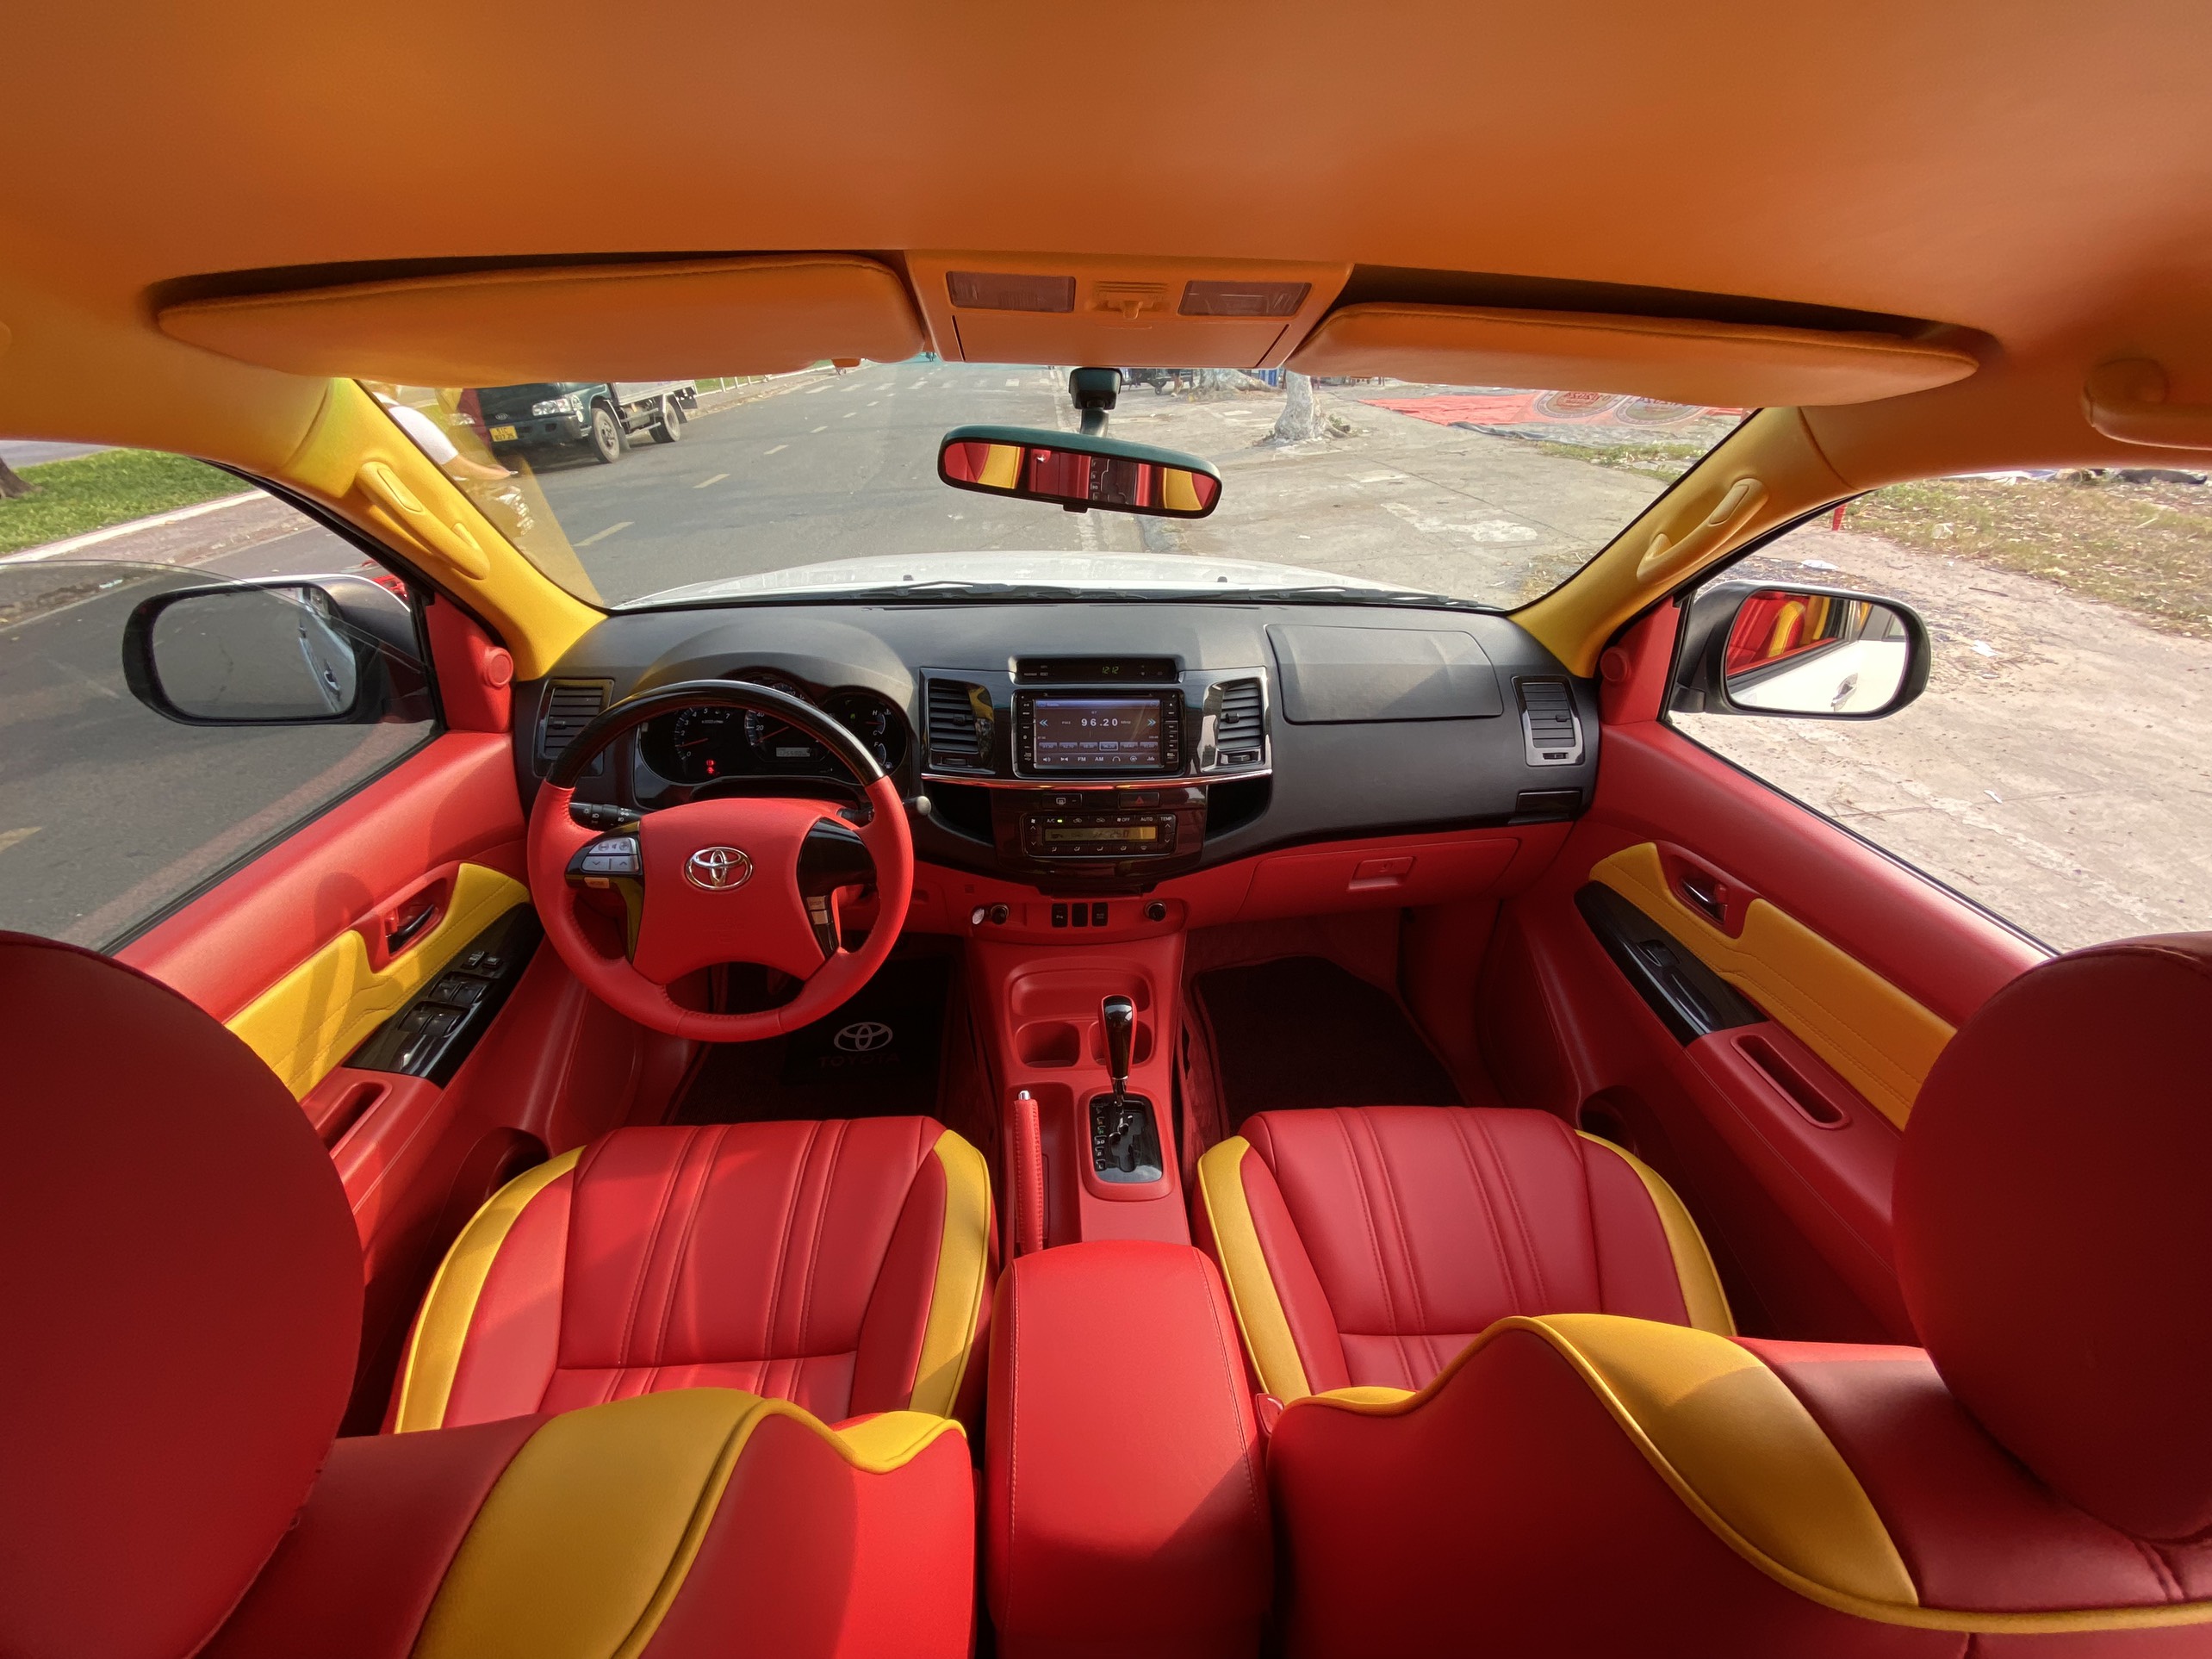 Đổi màu nội thất ô tô - Cửa Hàng H&T Auto - Chuyên Độ Và Đổi Màu Nội Thất Ô Tô